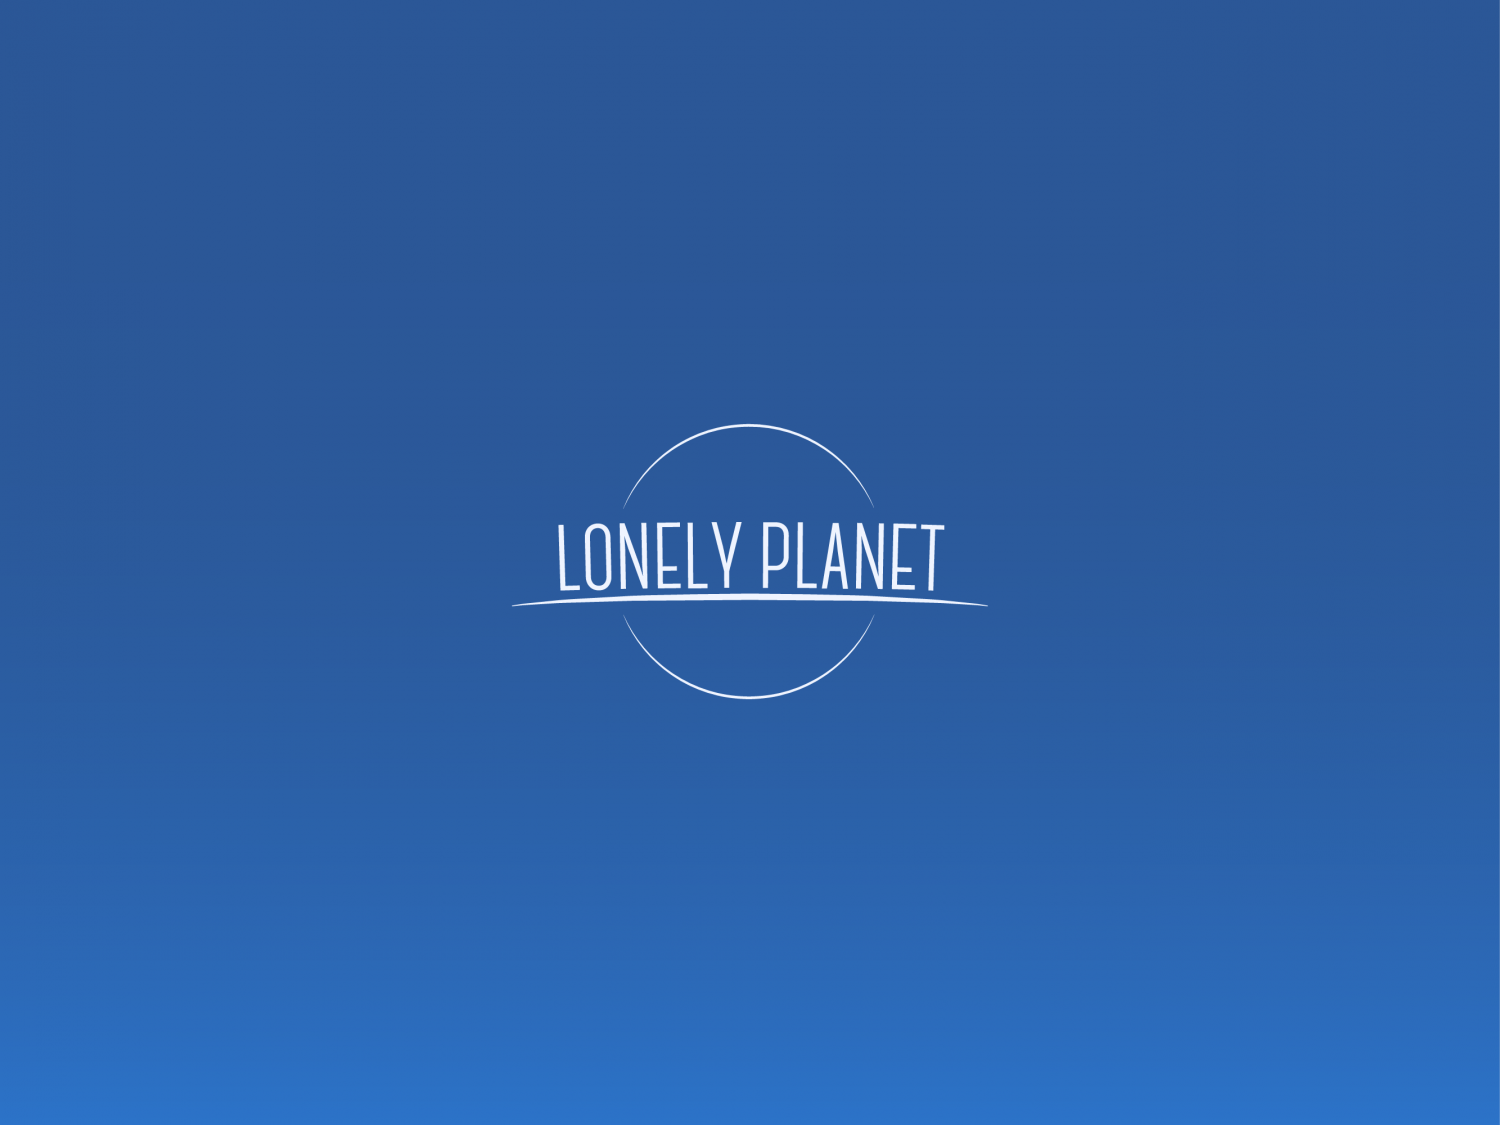 #13 LonelyPlanet